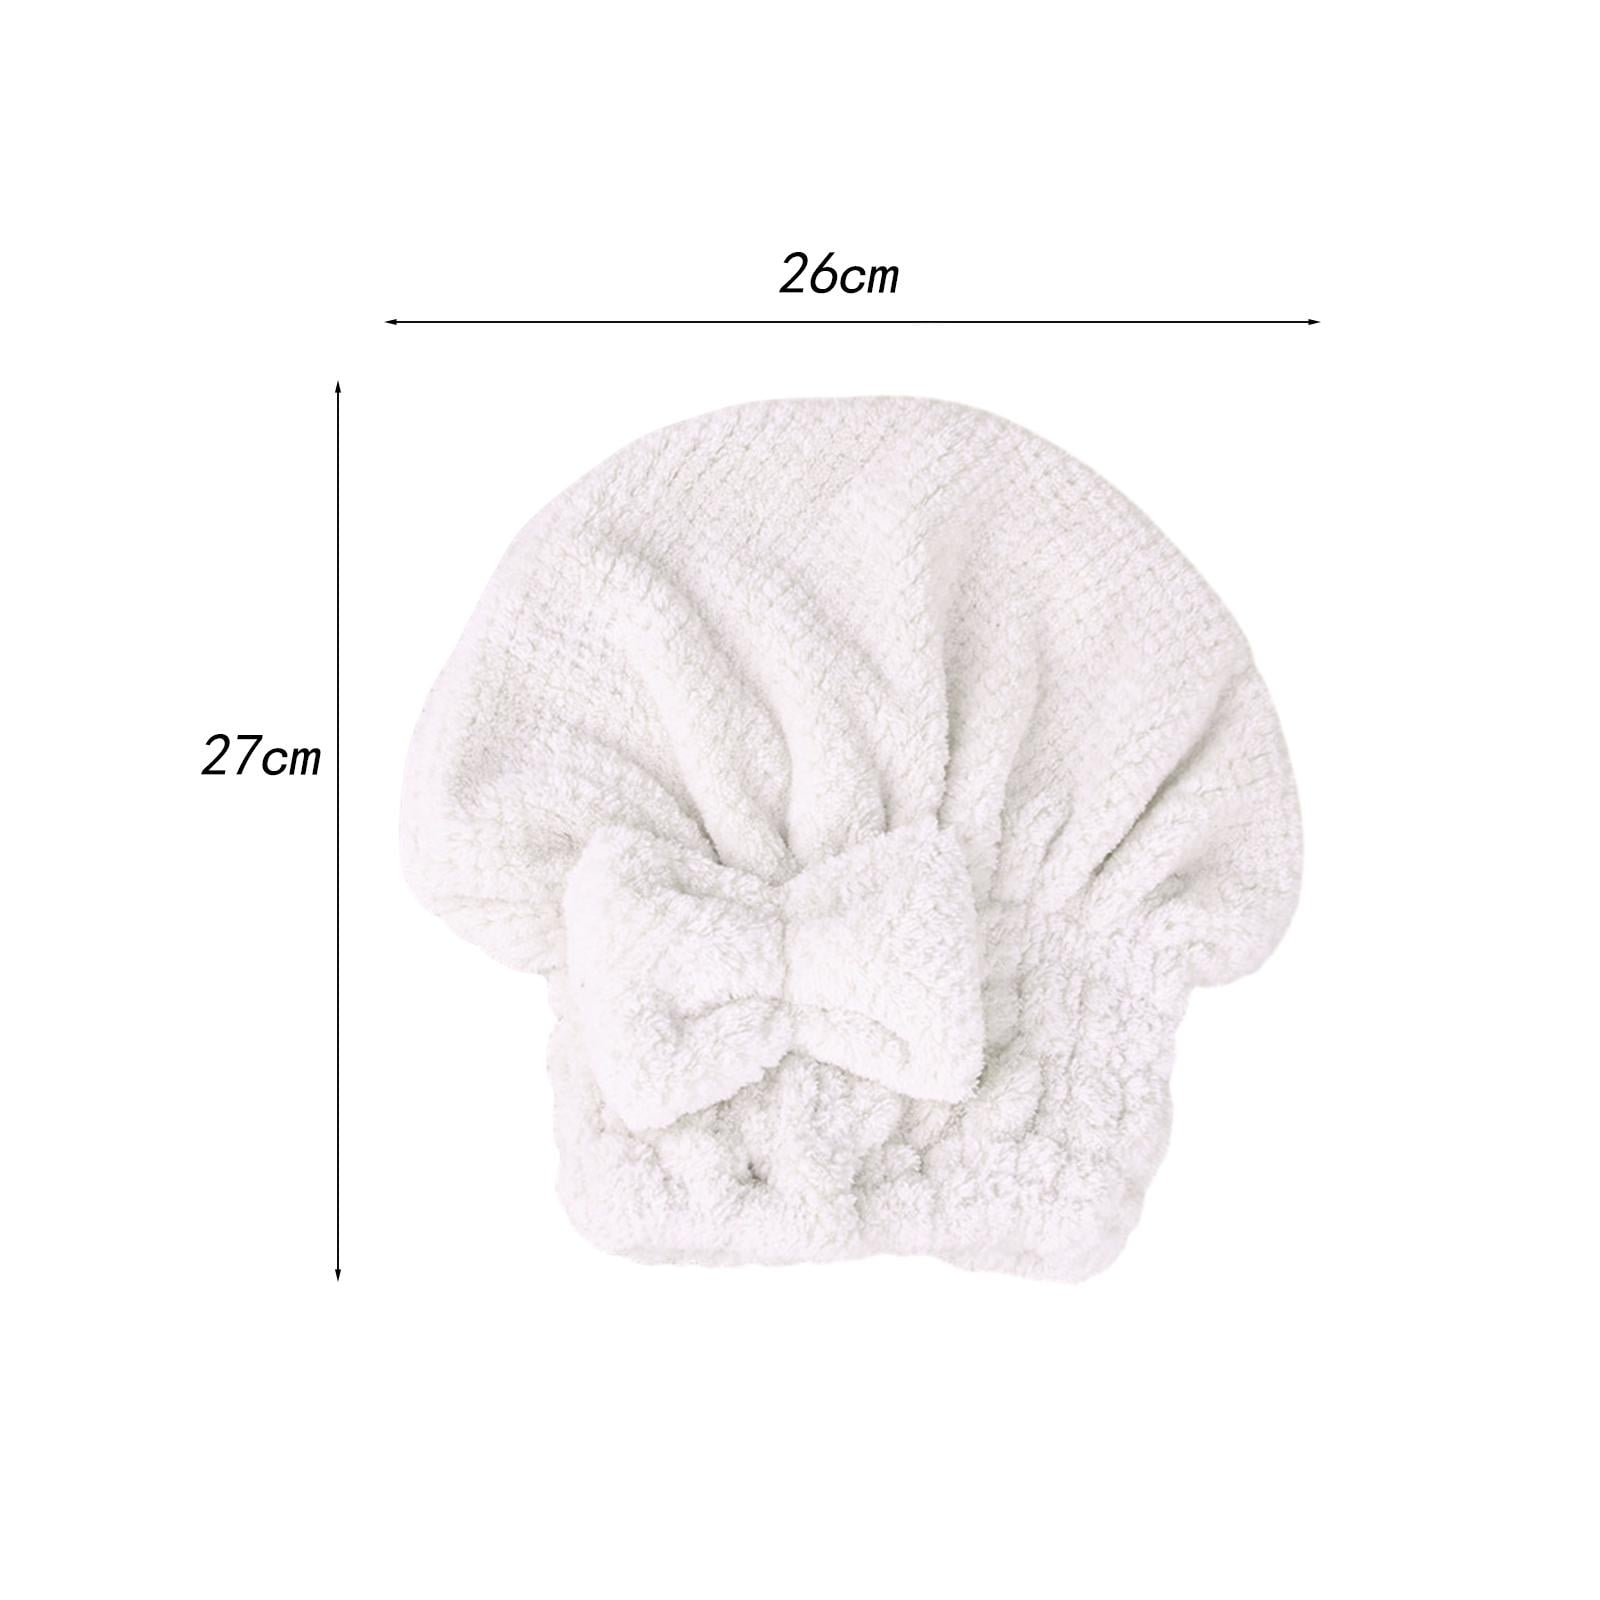  WFS Toallas de ducha, toallas de baño, toallas de baño  resistentes a la decoloración, toallas de algodón suave de secado rápido,  para deportes, playa, baño (paquete de 2) toallas de baño (